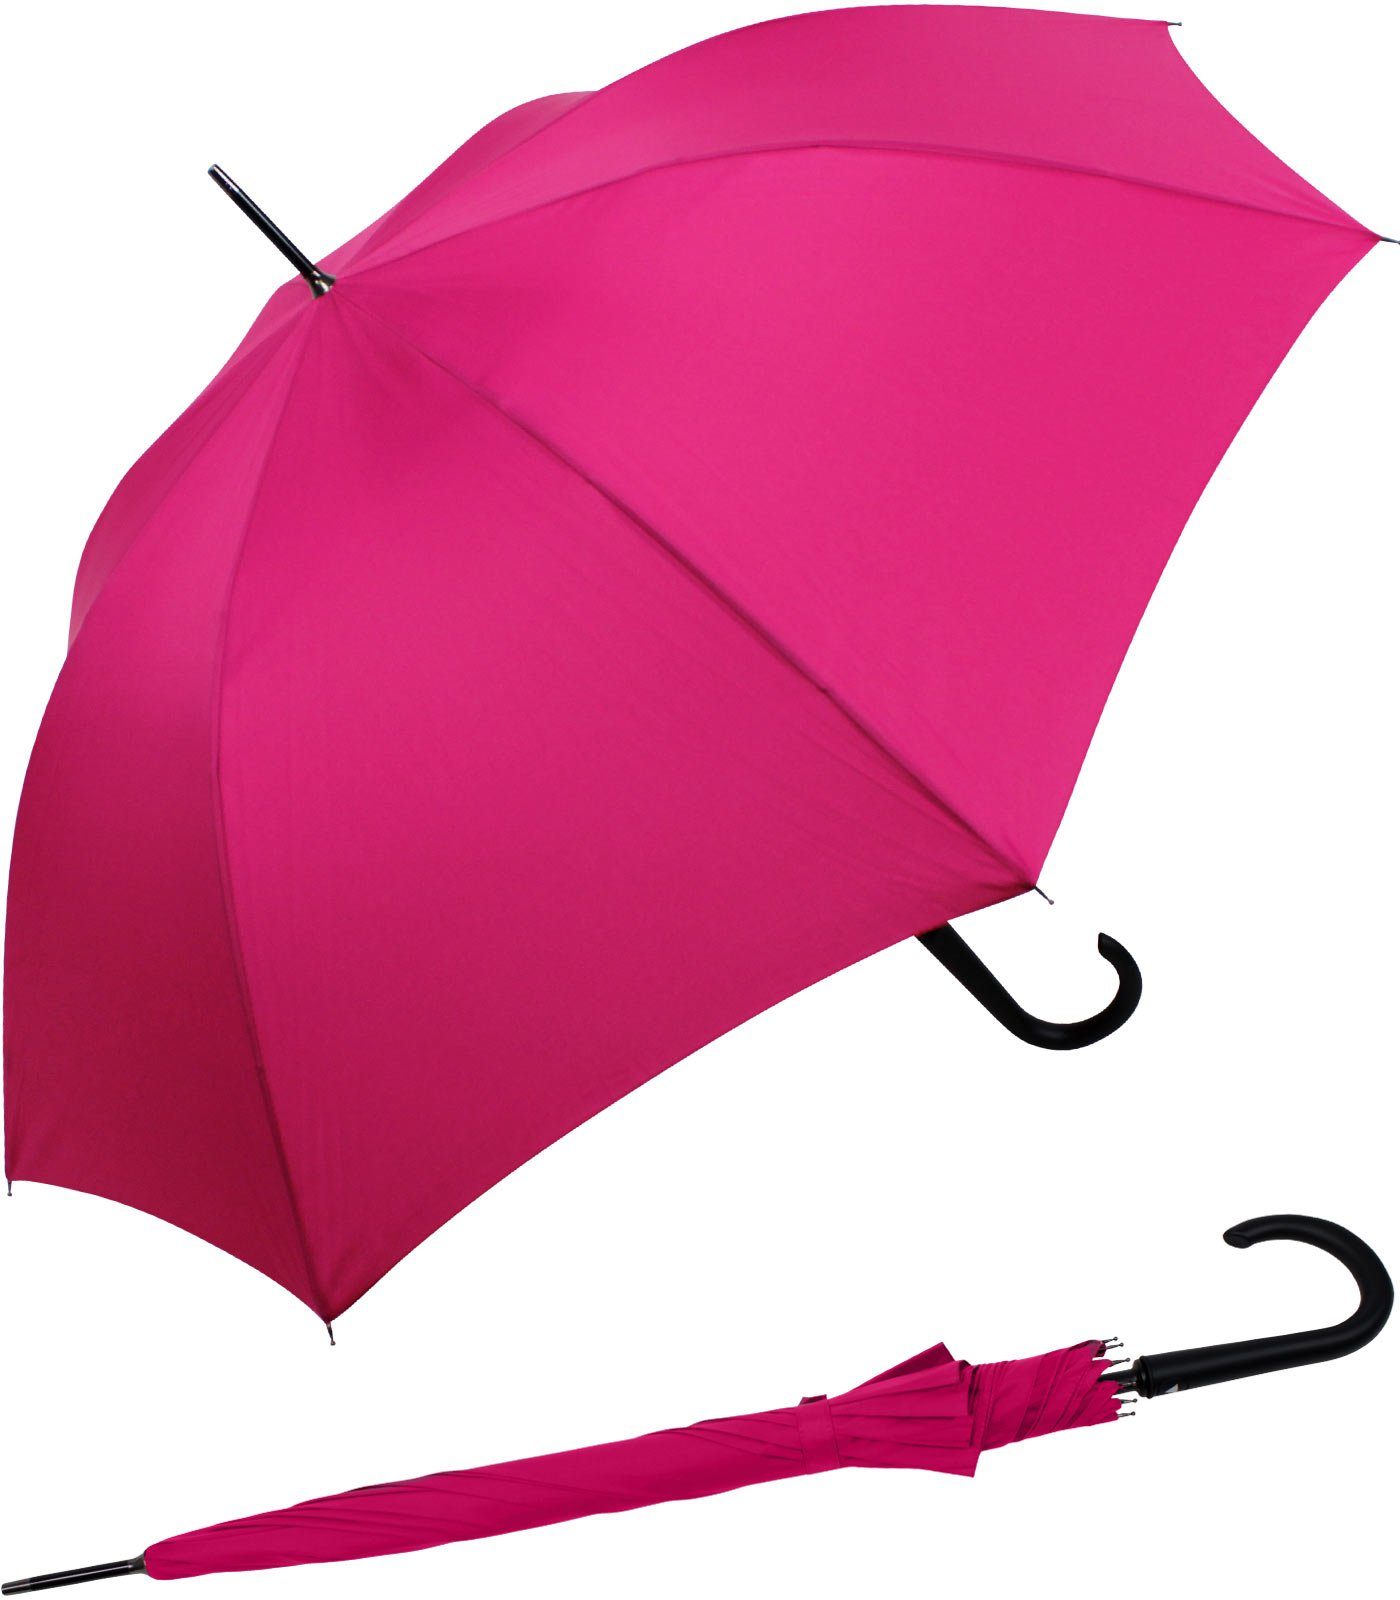 Schlussverkauf RS-Versand Langregenschirm großer stabiler Regenschirm pink mit Auf-Automatik, Stahl-Fiberglas-Gestell, Auslöseknopf integrierter